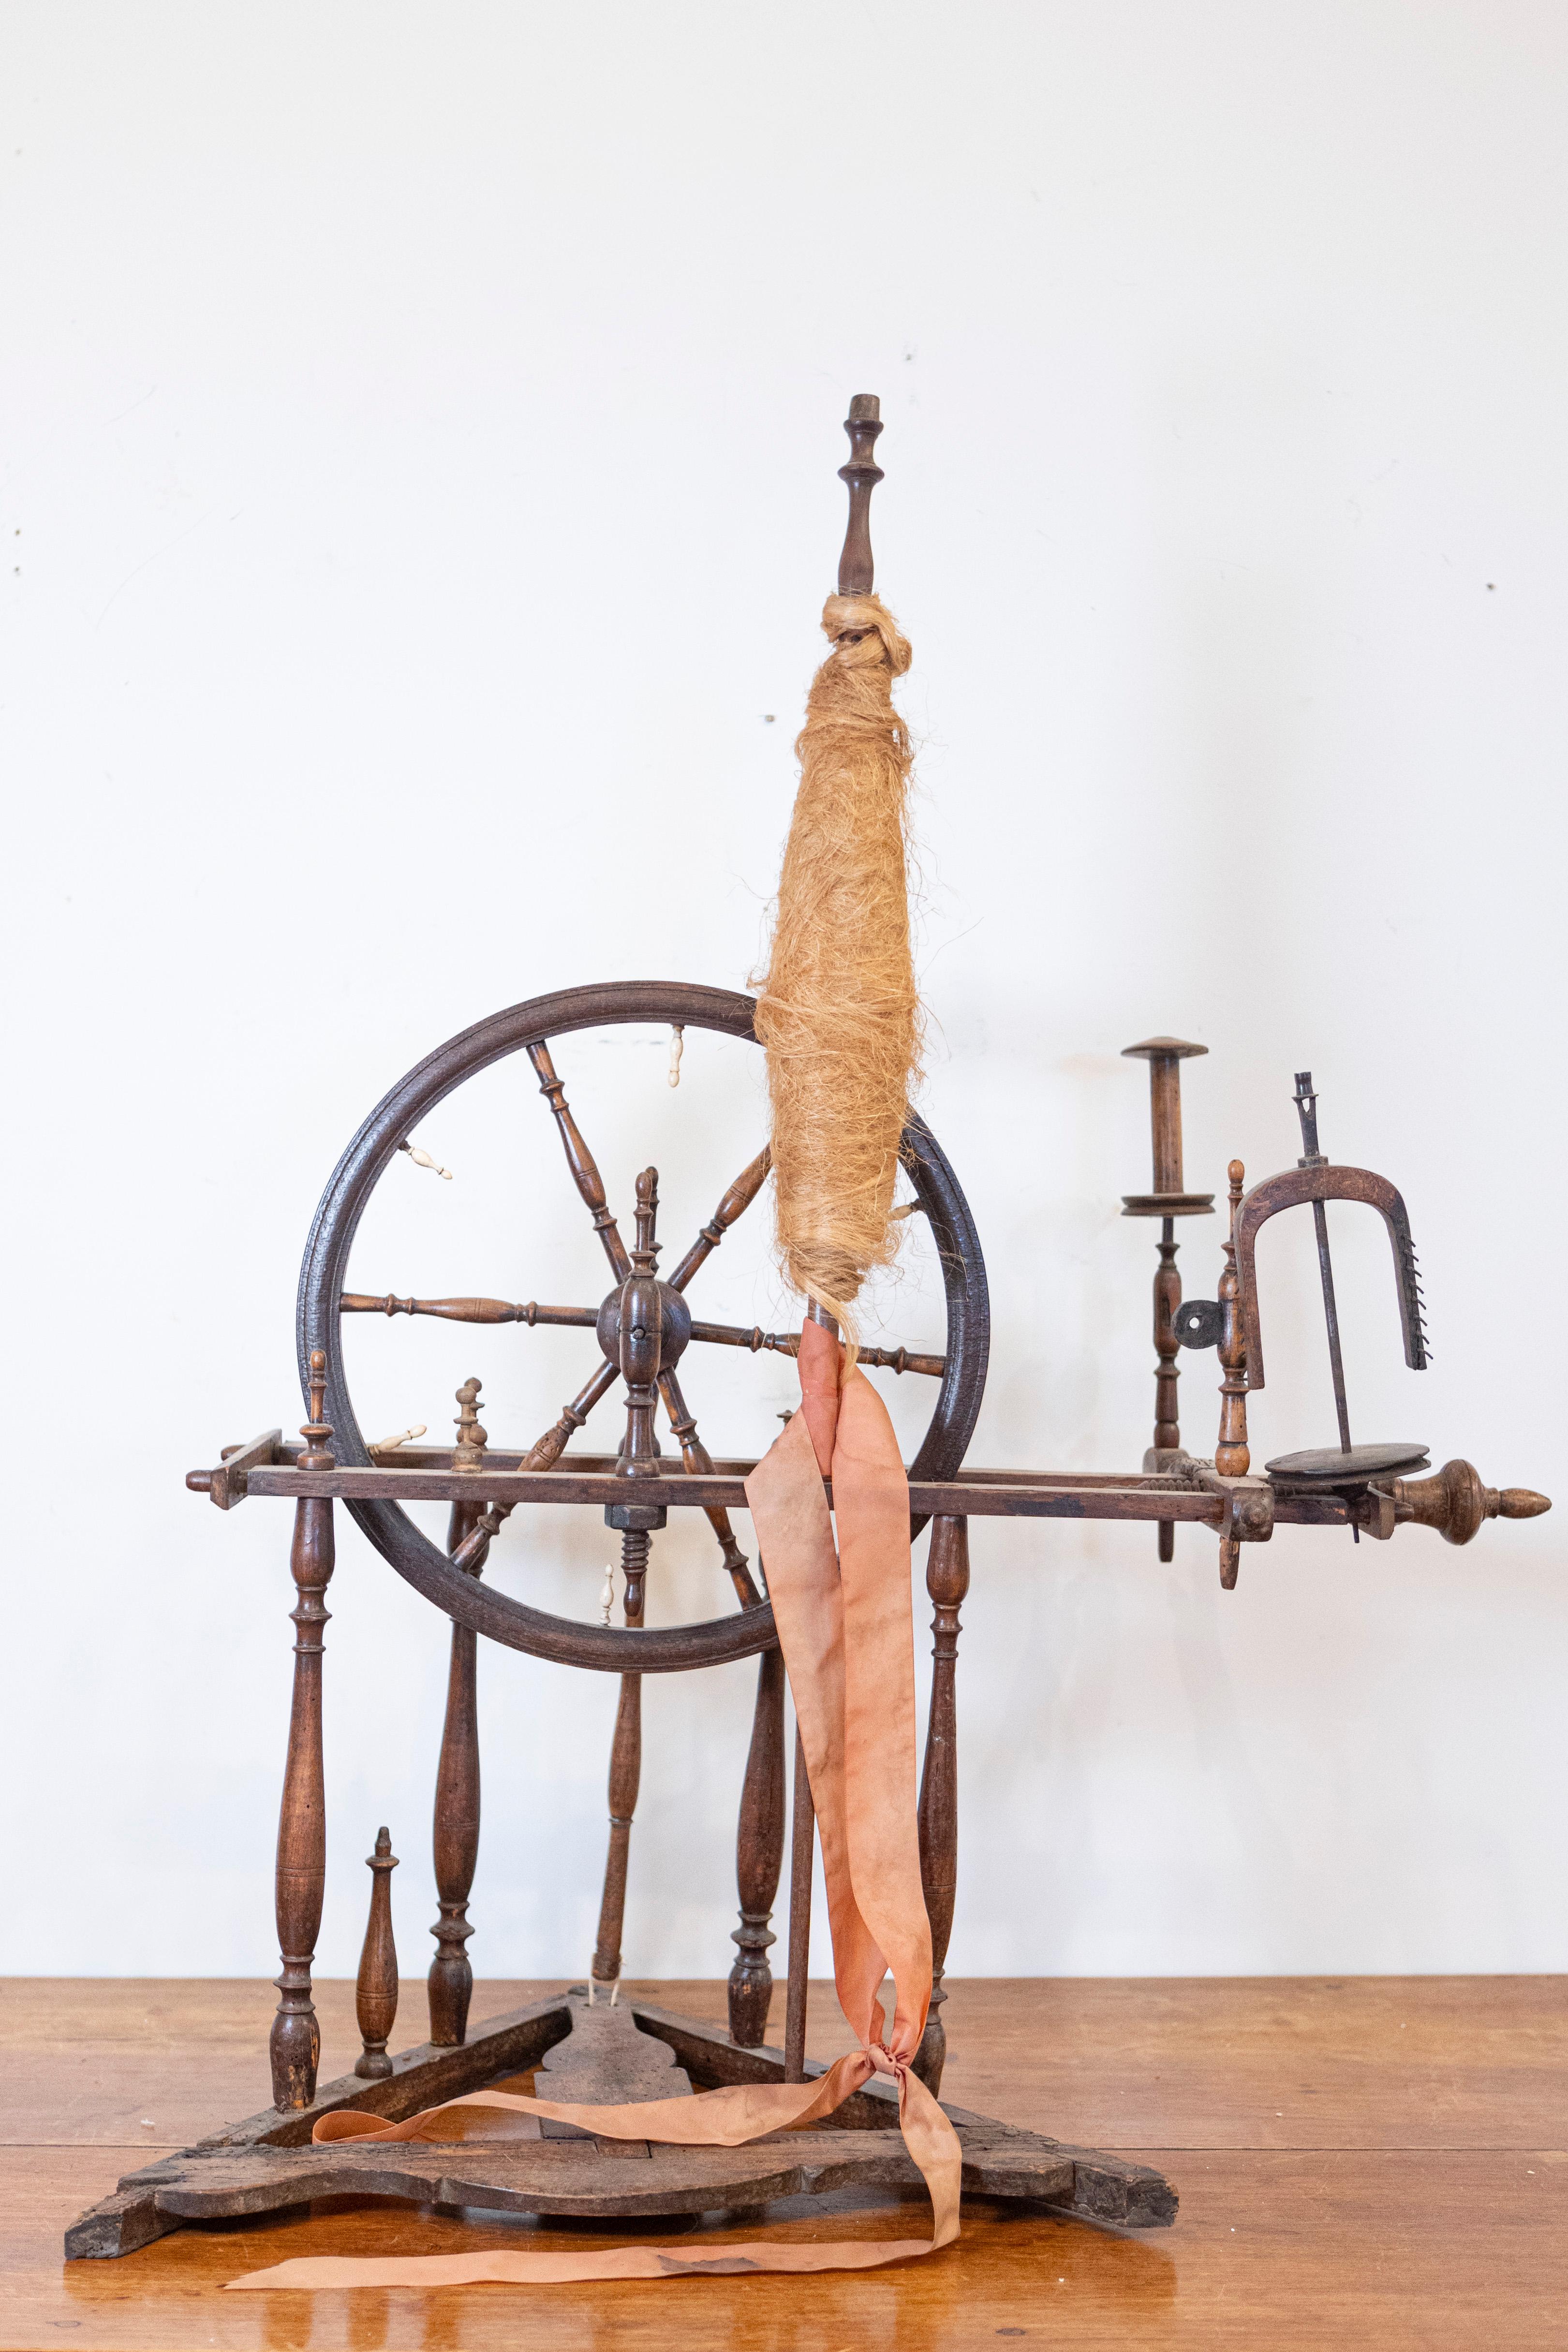 Ein französisches, rustikales Spinnrad aus dem 18. Jahrhundert, mit Originalteilen. Dieses Spinnrad, das im 18. Jahrhundert in Frankreich hergestellt wurde, ist eine hervorragende dekorative Ergänzung für jedes Haus. Das Rad, das durch eine gedrehte